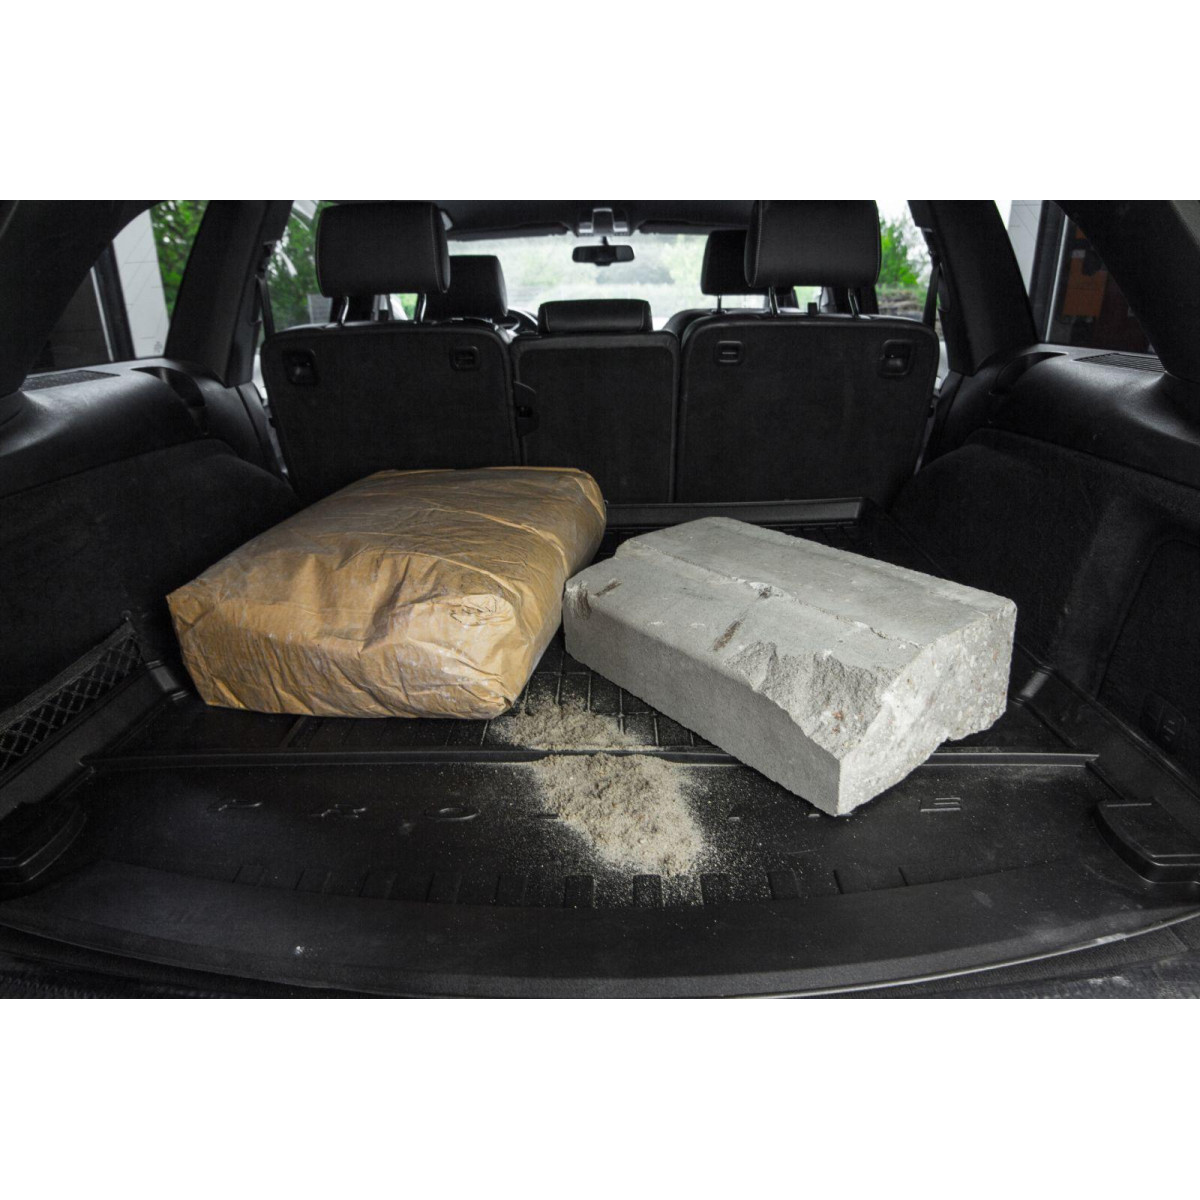 Guminis bagažinės kilimėlis Proline Toyota Auris II 2012-2018m. / Station wagon / apatinė dalis / paaukštintais kraštais